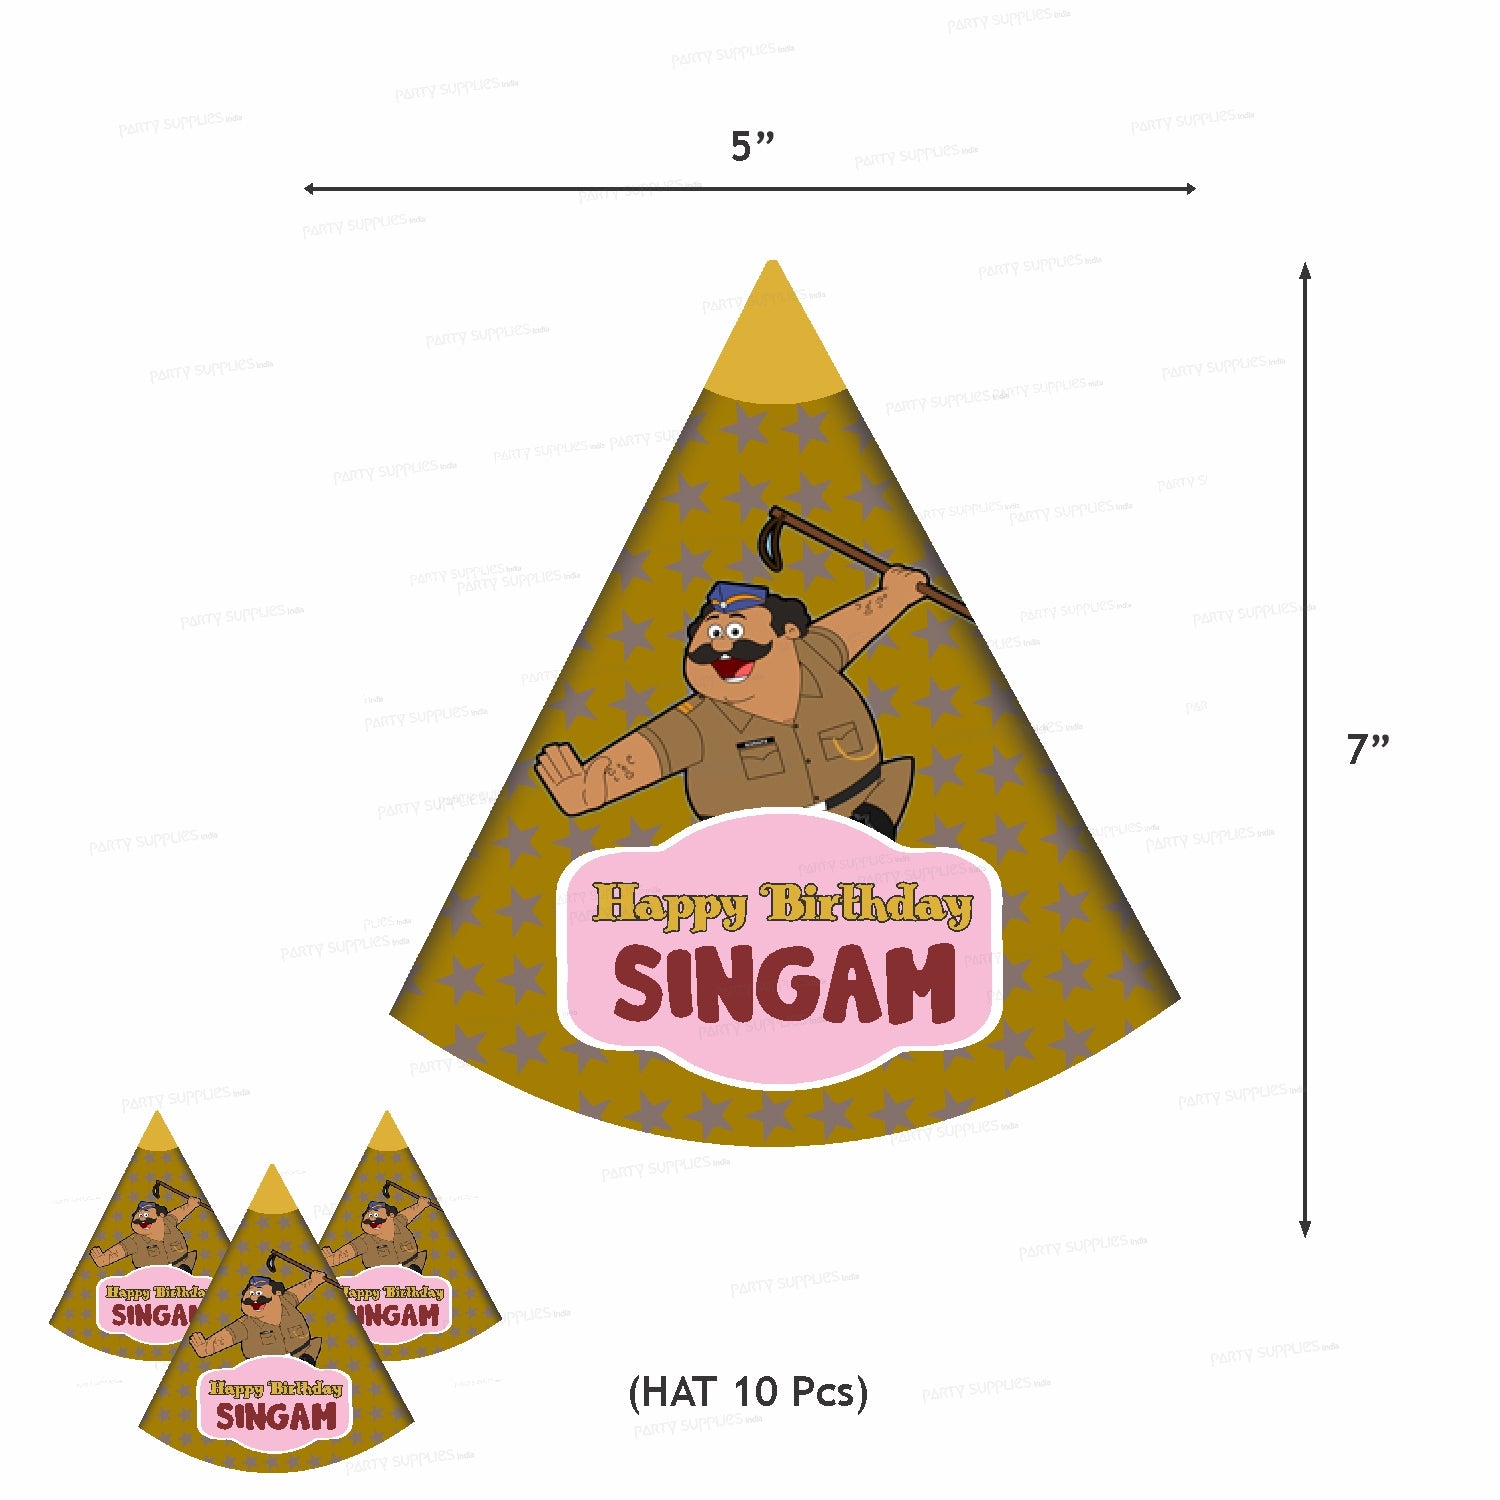 PSI Little Singham Theme Classic Combo Kit